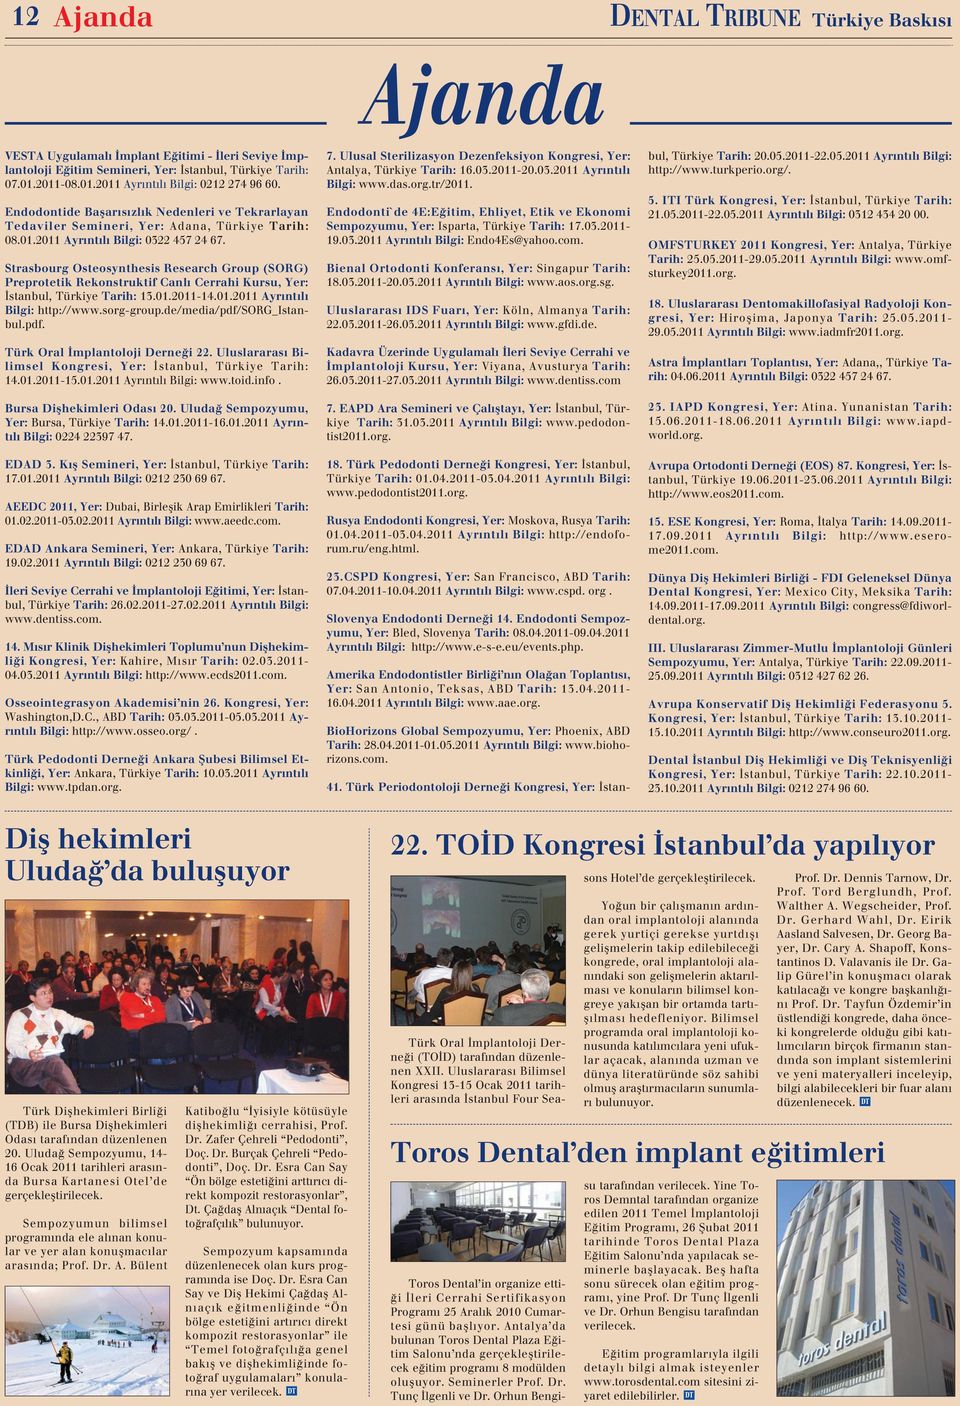 Strasbourg Osteosynthesis Research Group (SORG) Preprotetik Rekonstruktif Canlı Cerrahi Kursu, Yer: İstanbul, Türkiye Tarih: 13.01.2011-14.01.2011 Ayrıntılı Bilgi: http://www.sorg-group.